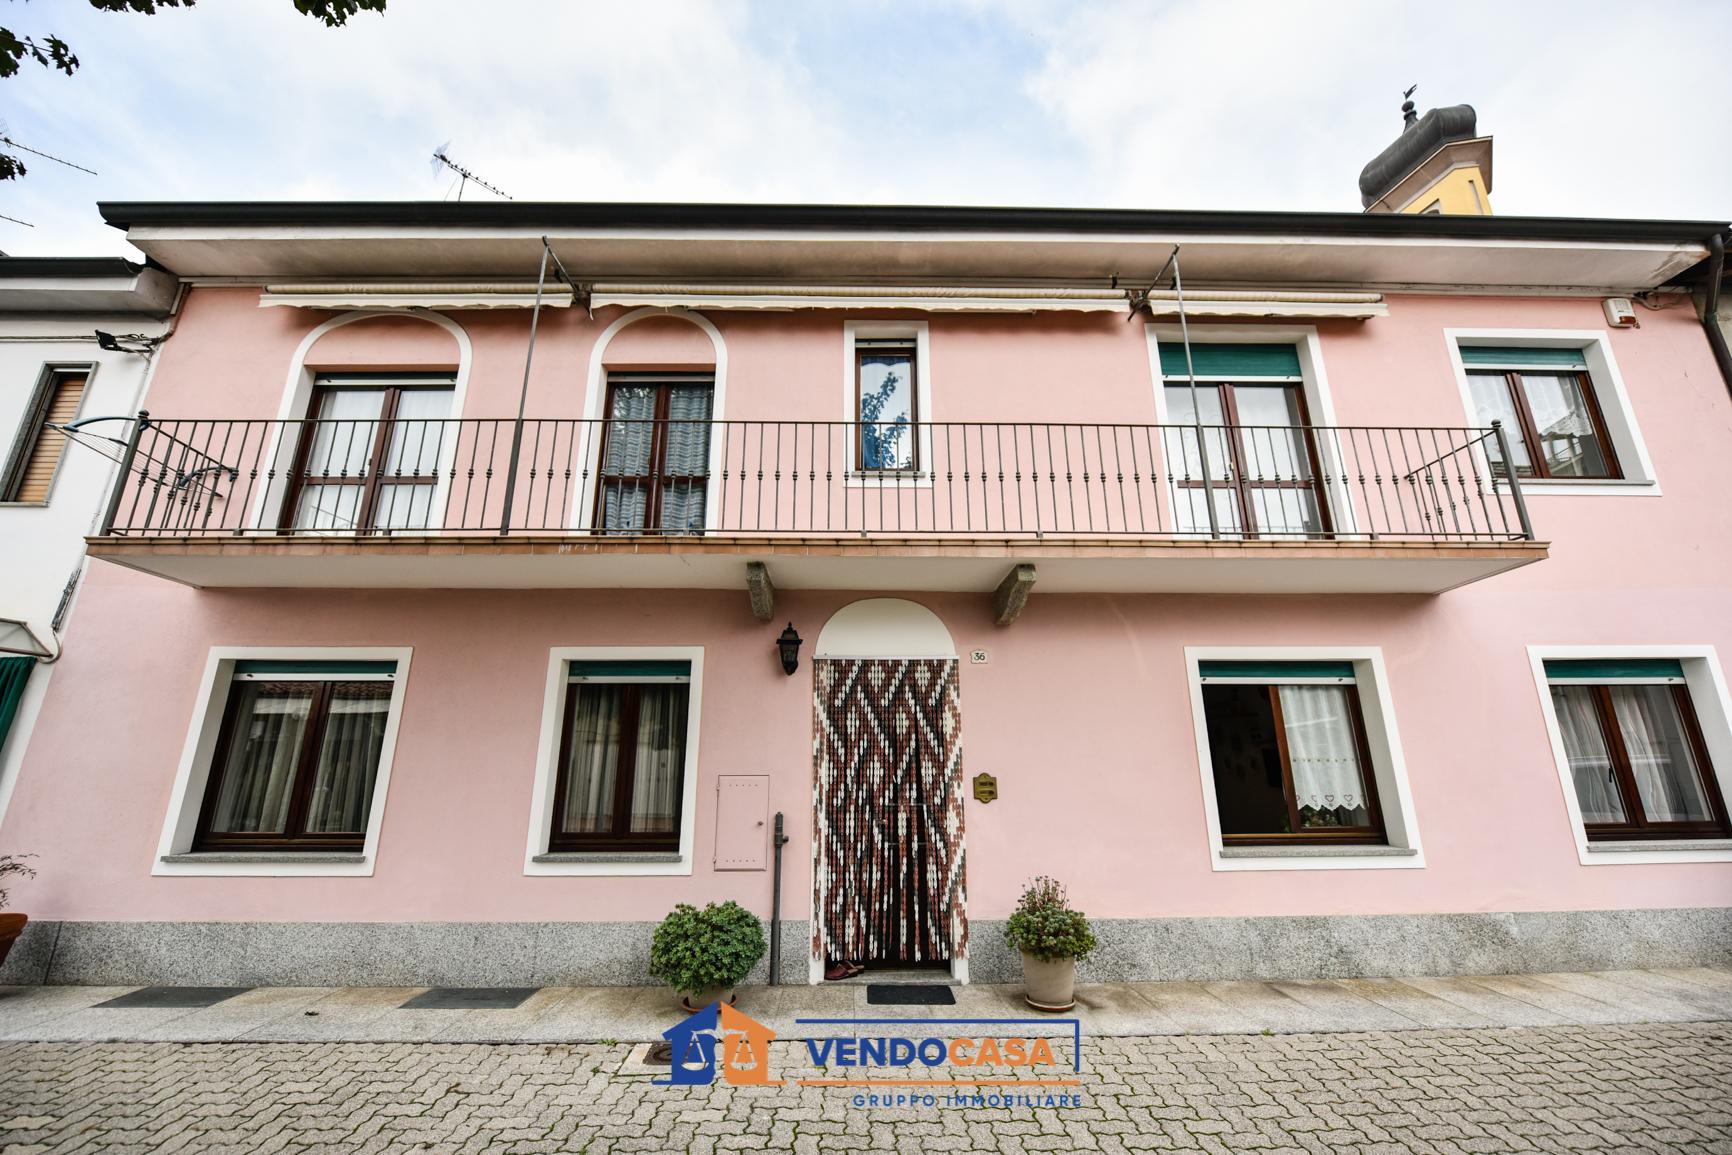 Vendita Casa Indipendente Casa/Villa Villastellone via cossolo 36 380406